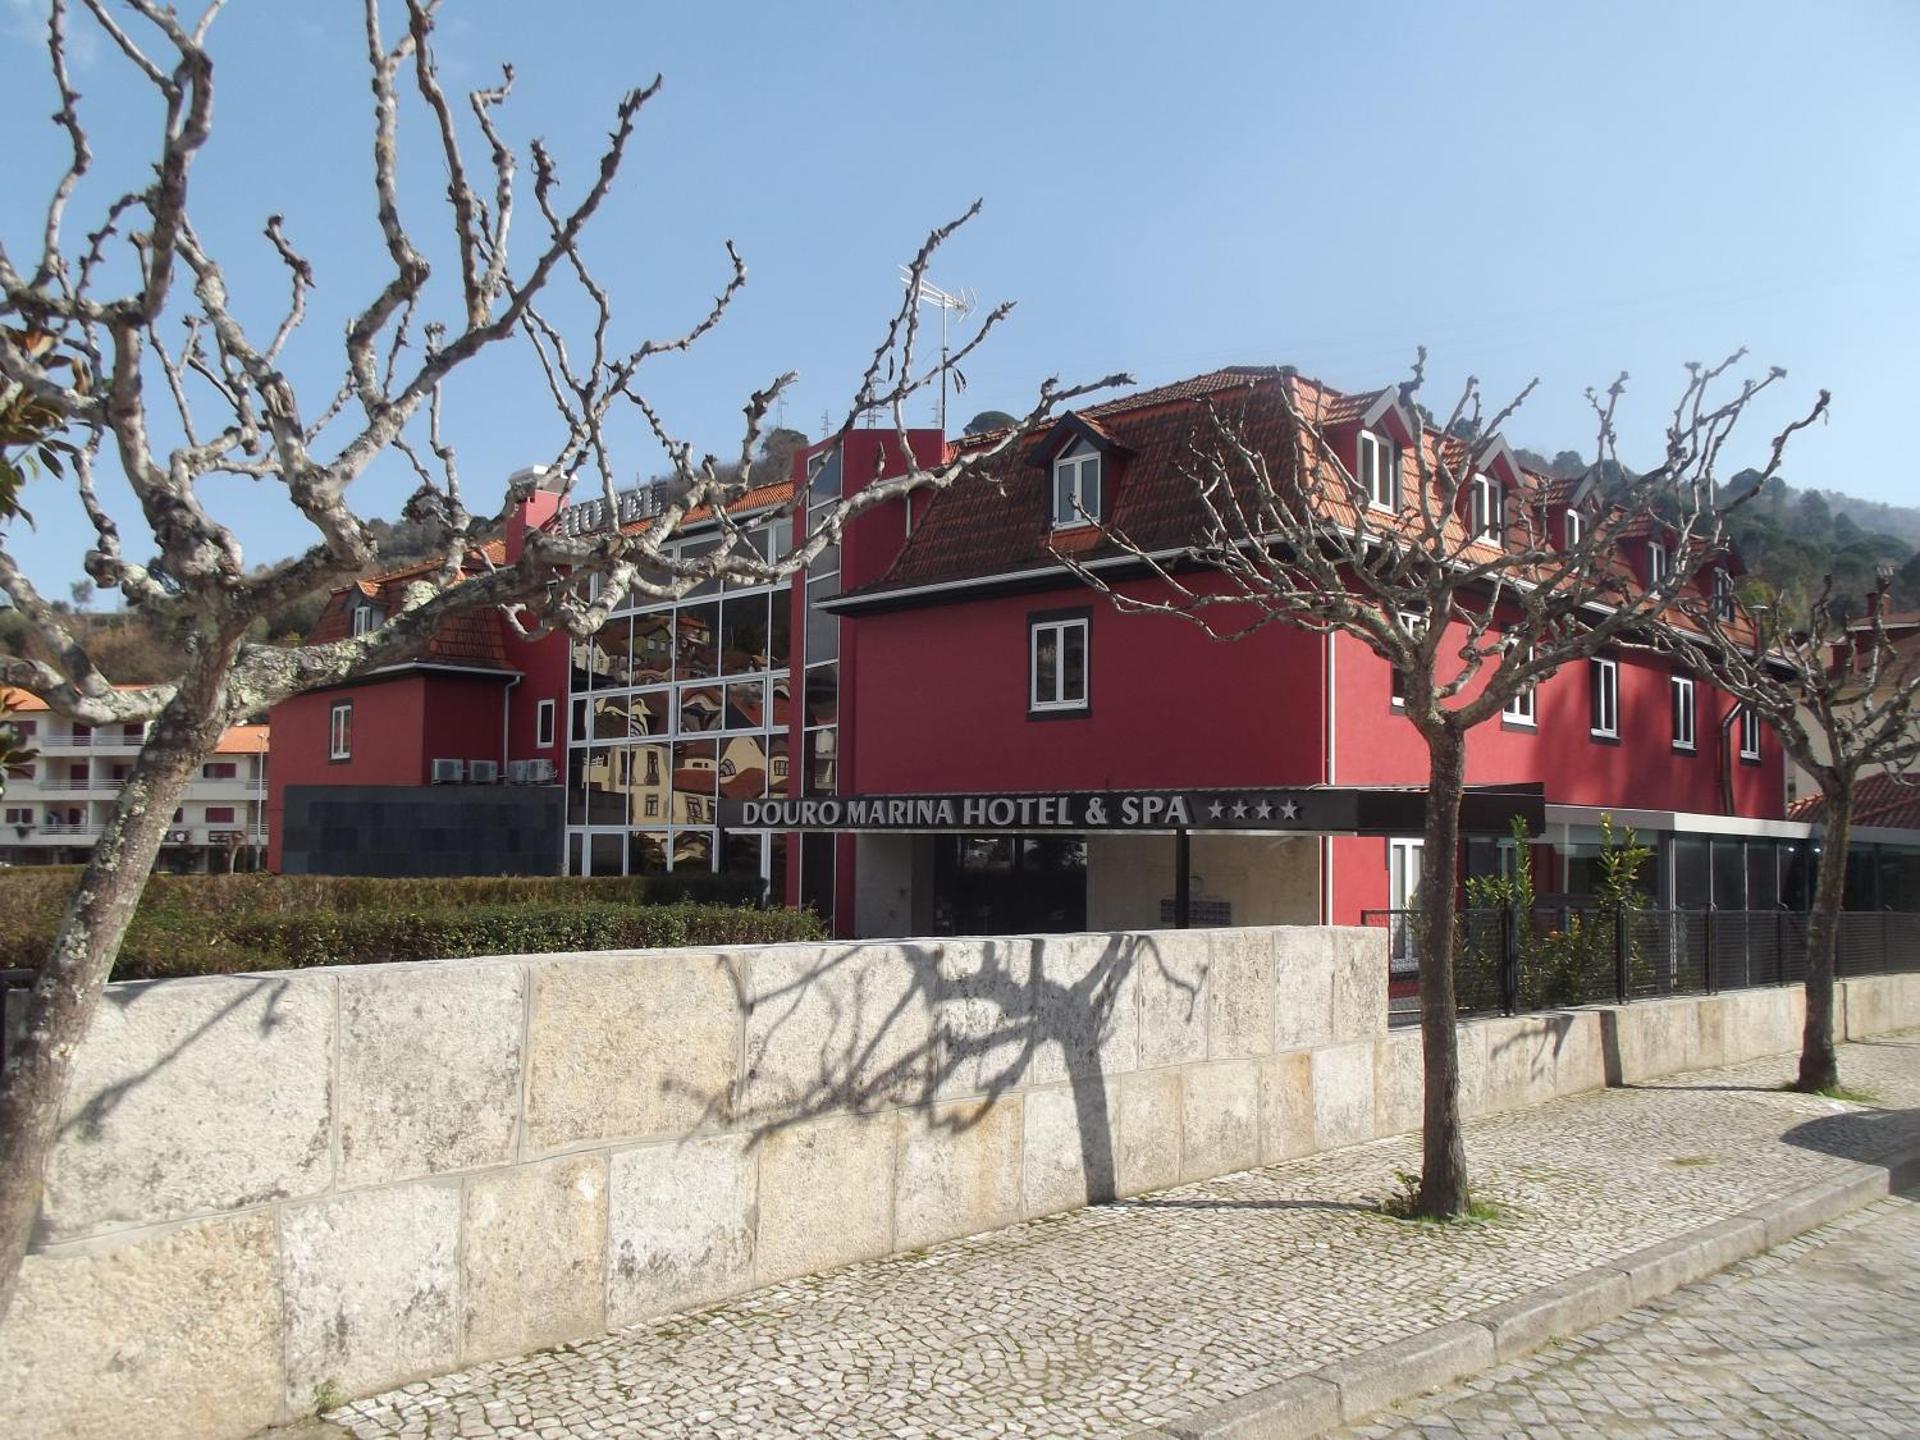 Douro Marina Hotel & SPA: Oásis de Relaxamento e Conforto